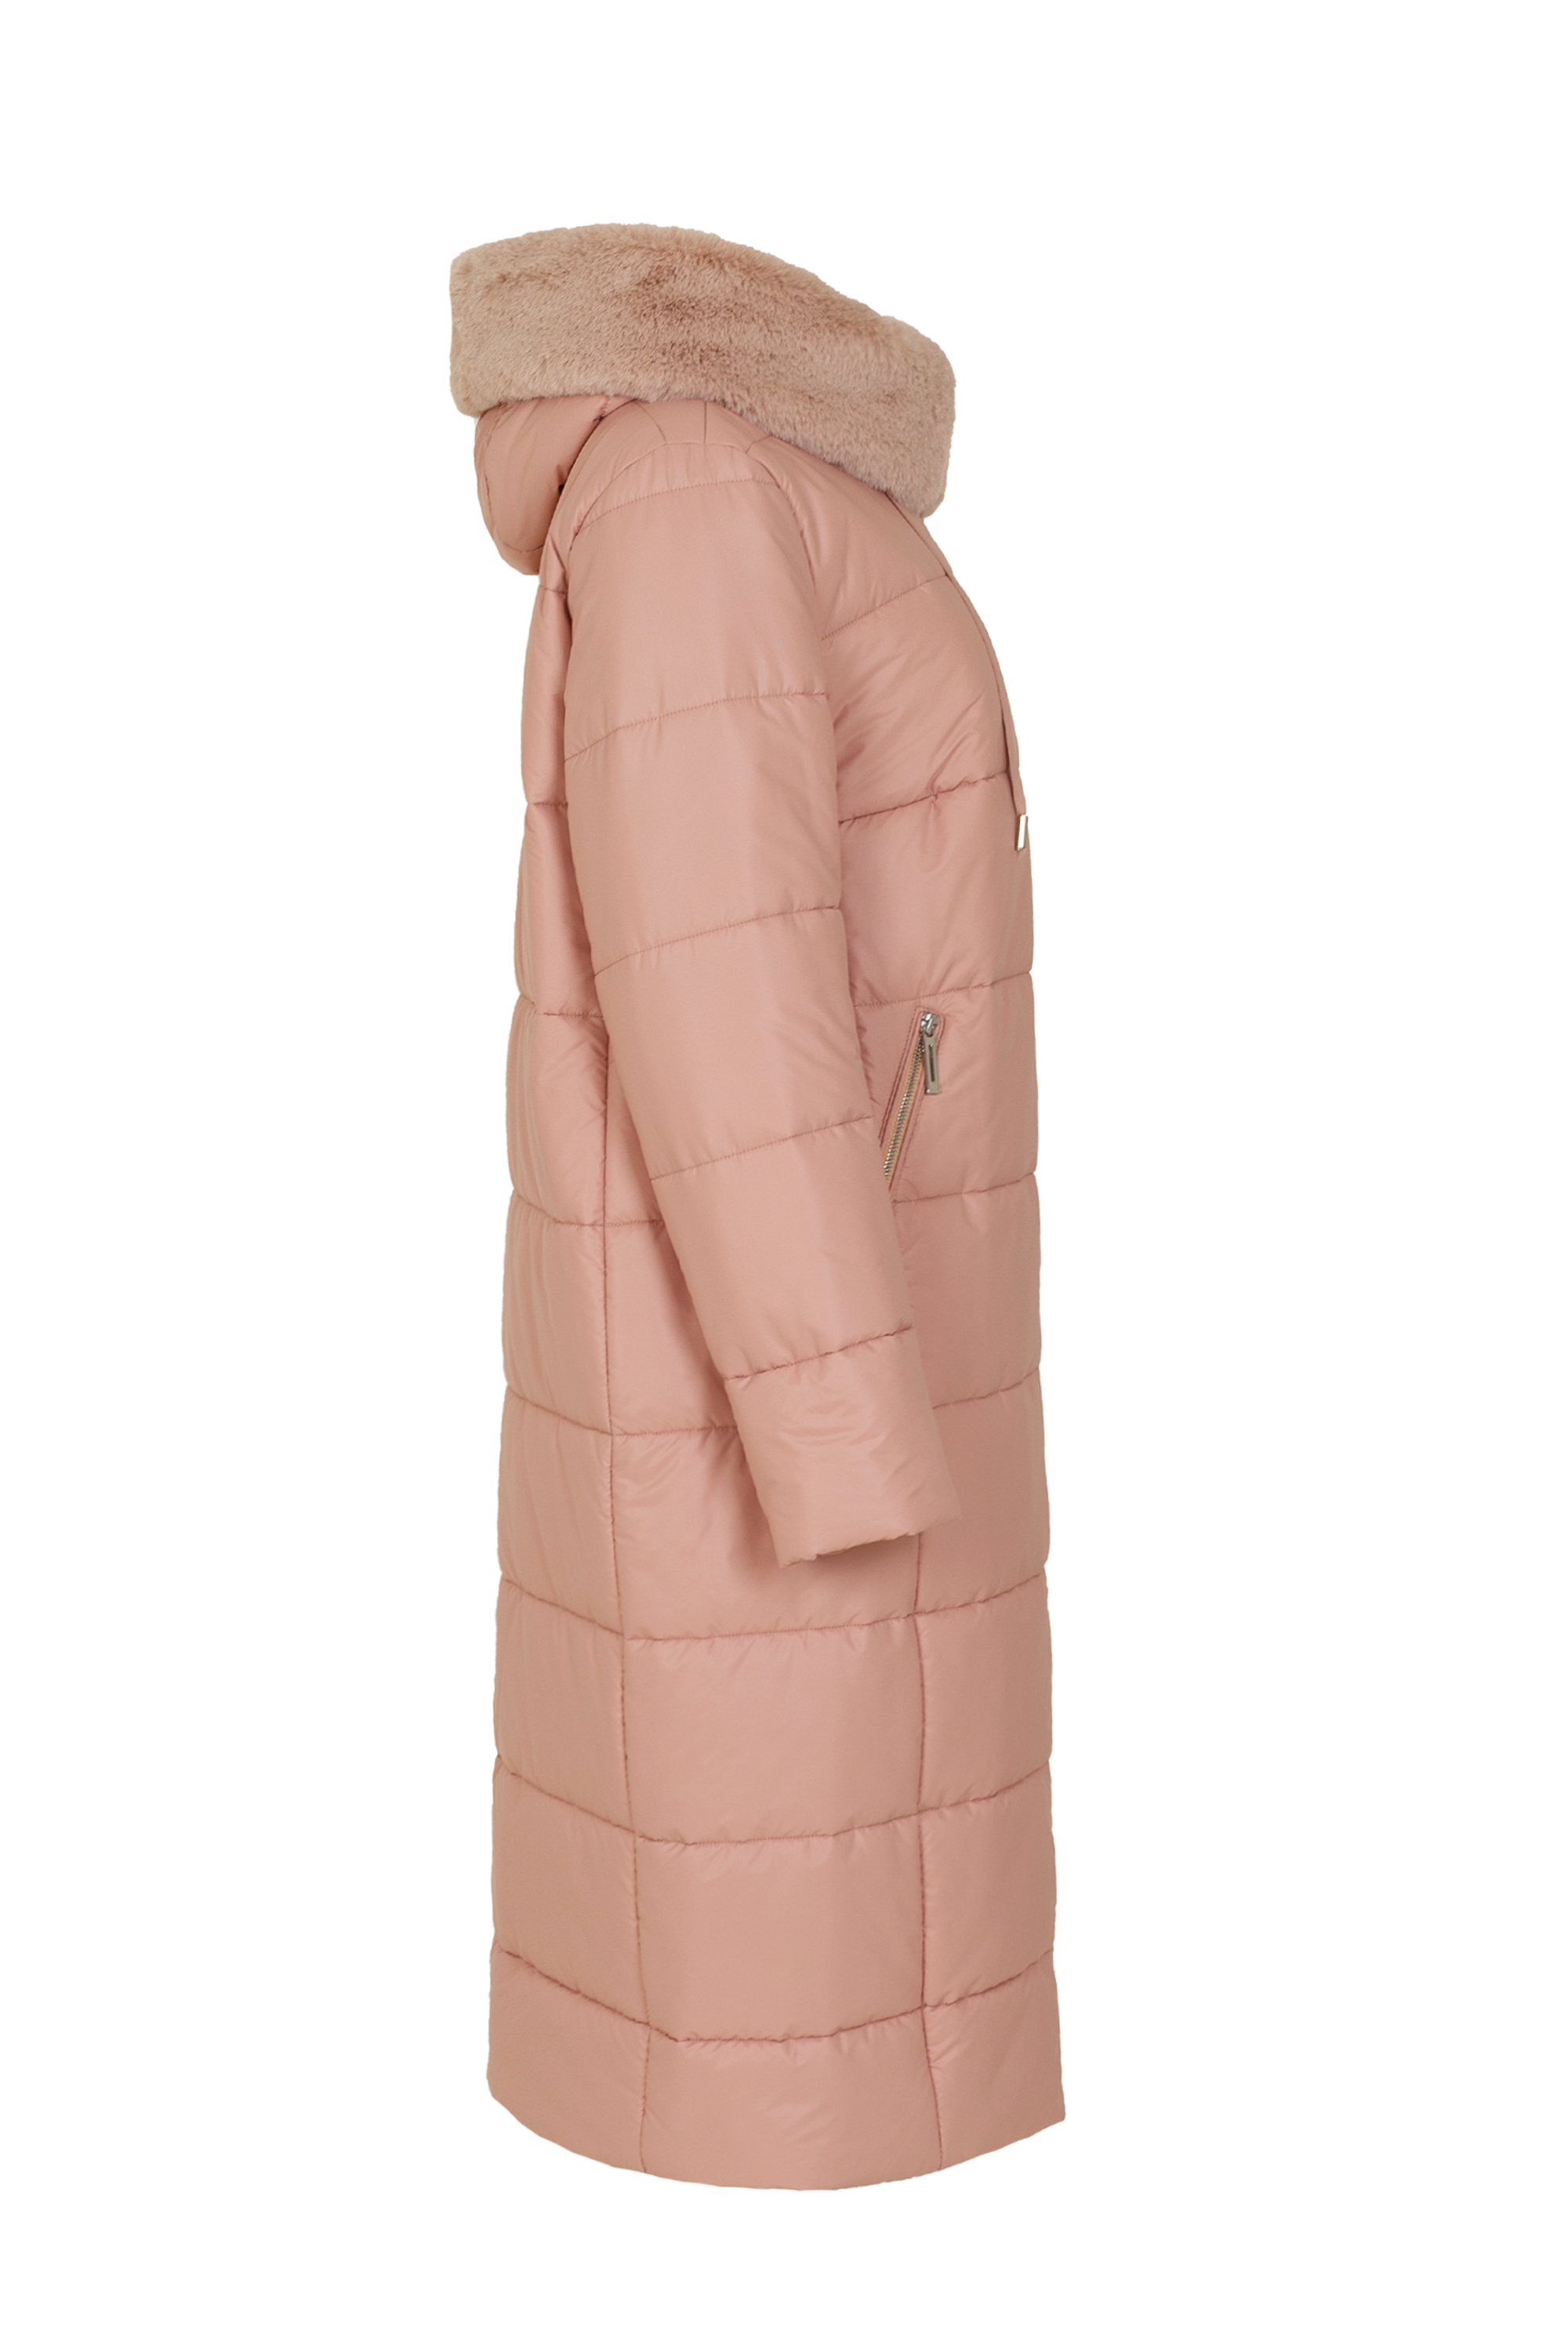 Пальто женское плащевое утепленное 5S-13062-1